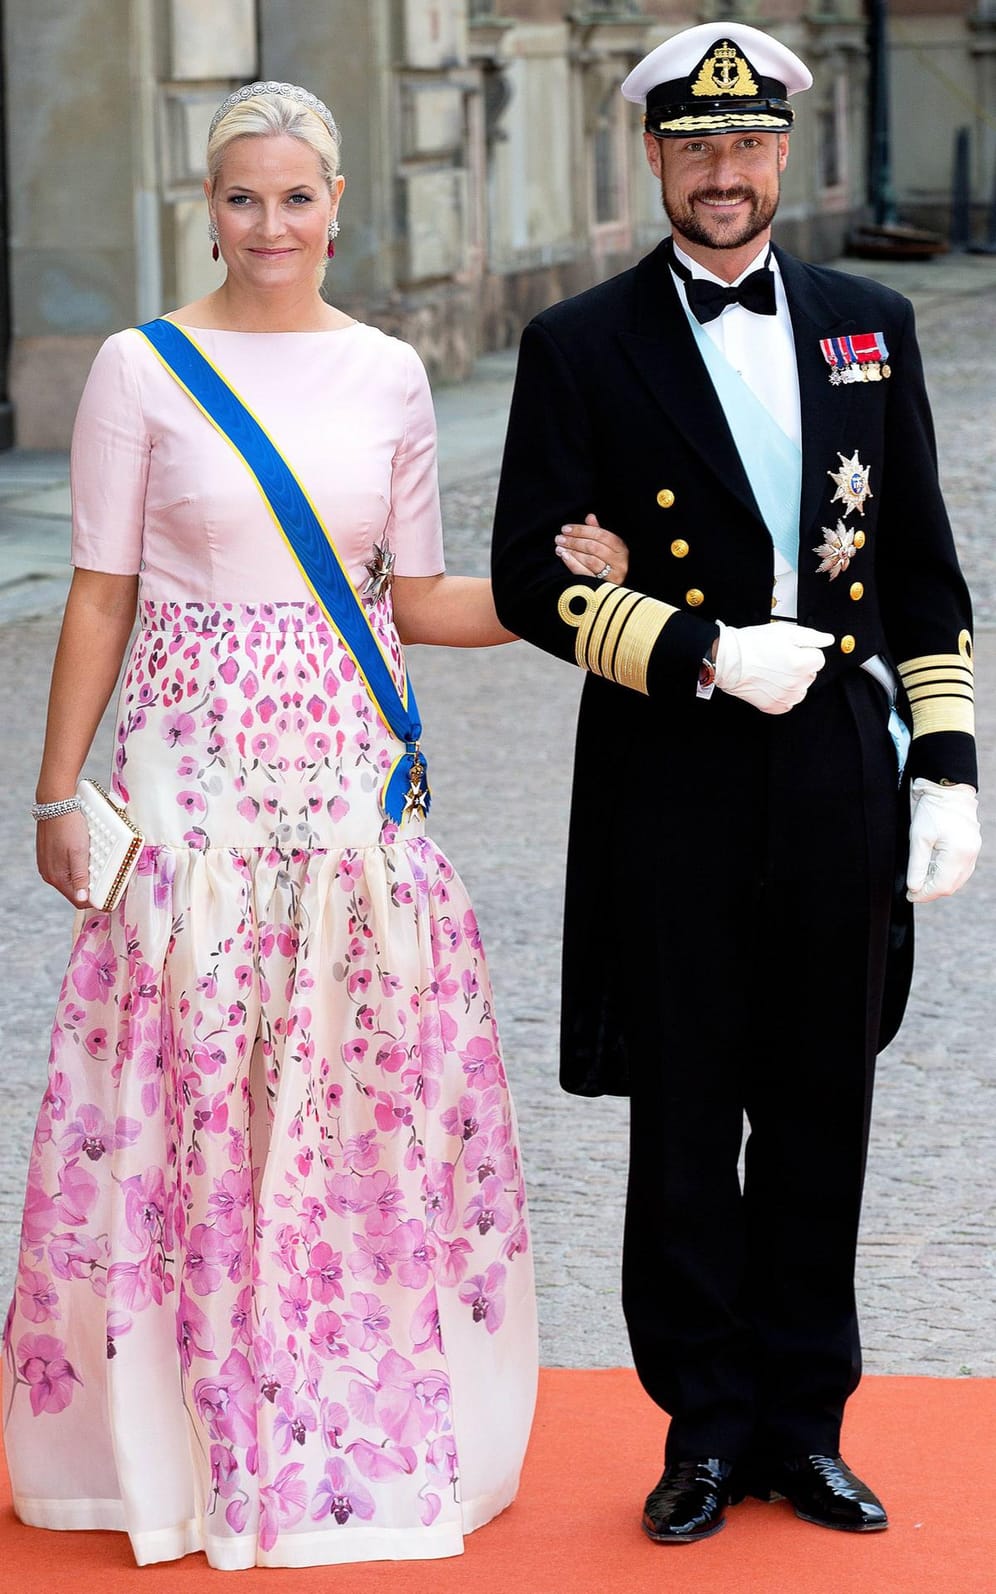 Mette-Marit und Haakon bei der Hochzeit von Prinz Carl Philip und Prinzessin Sofia.